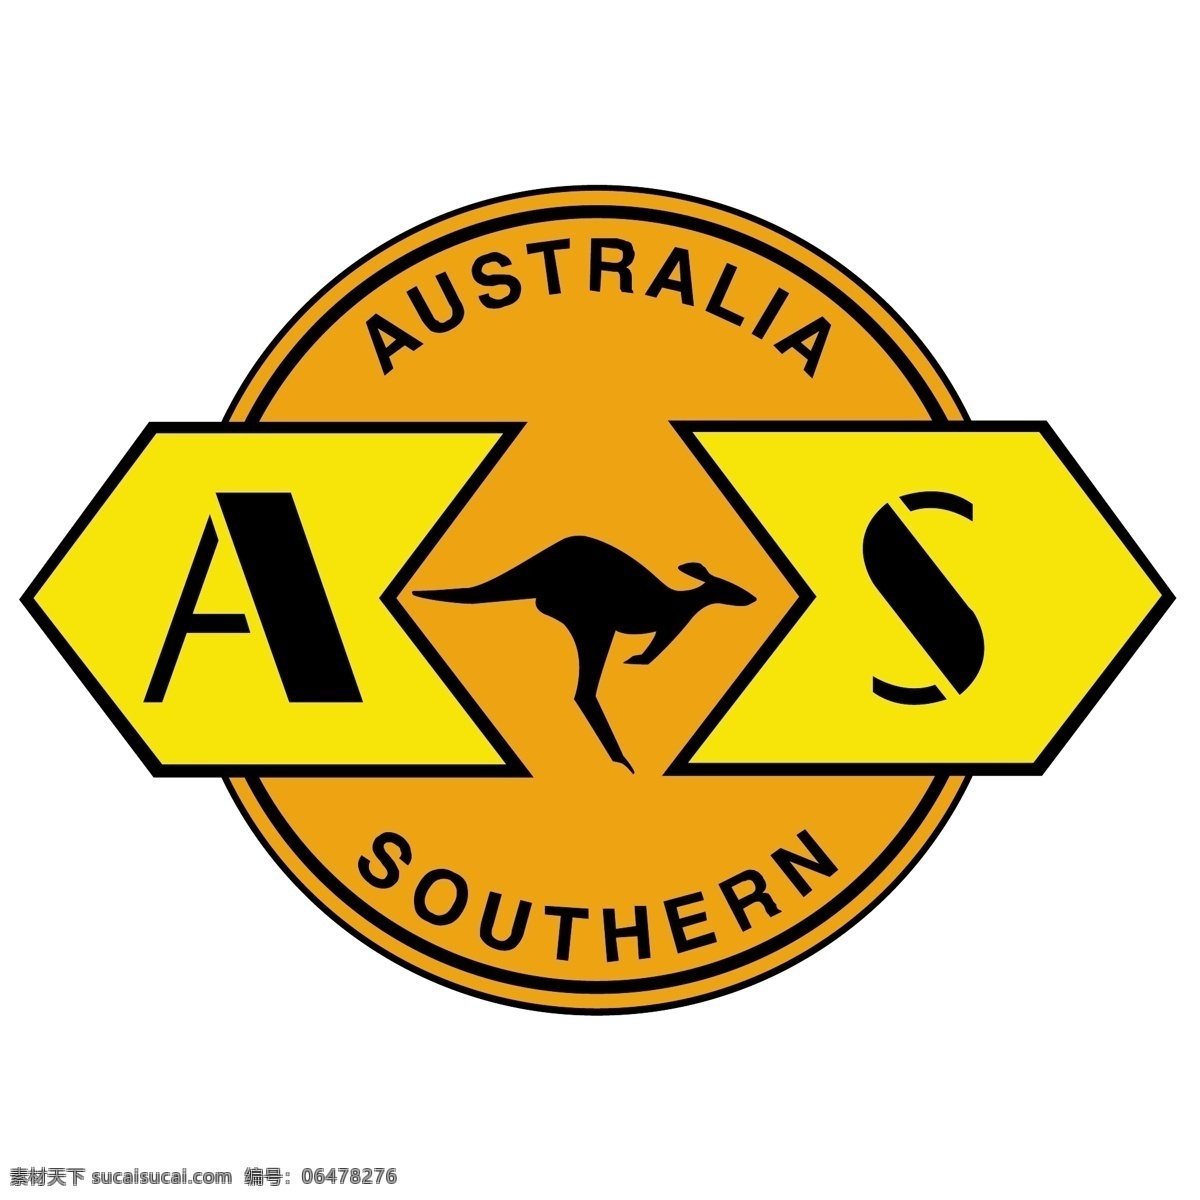 自由 澳大利亚 南部 铁路 标志 白色